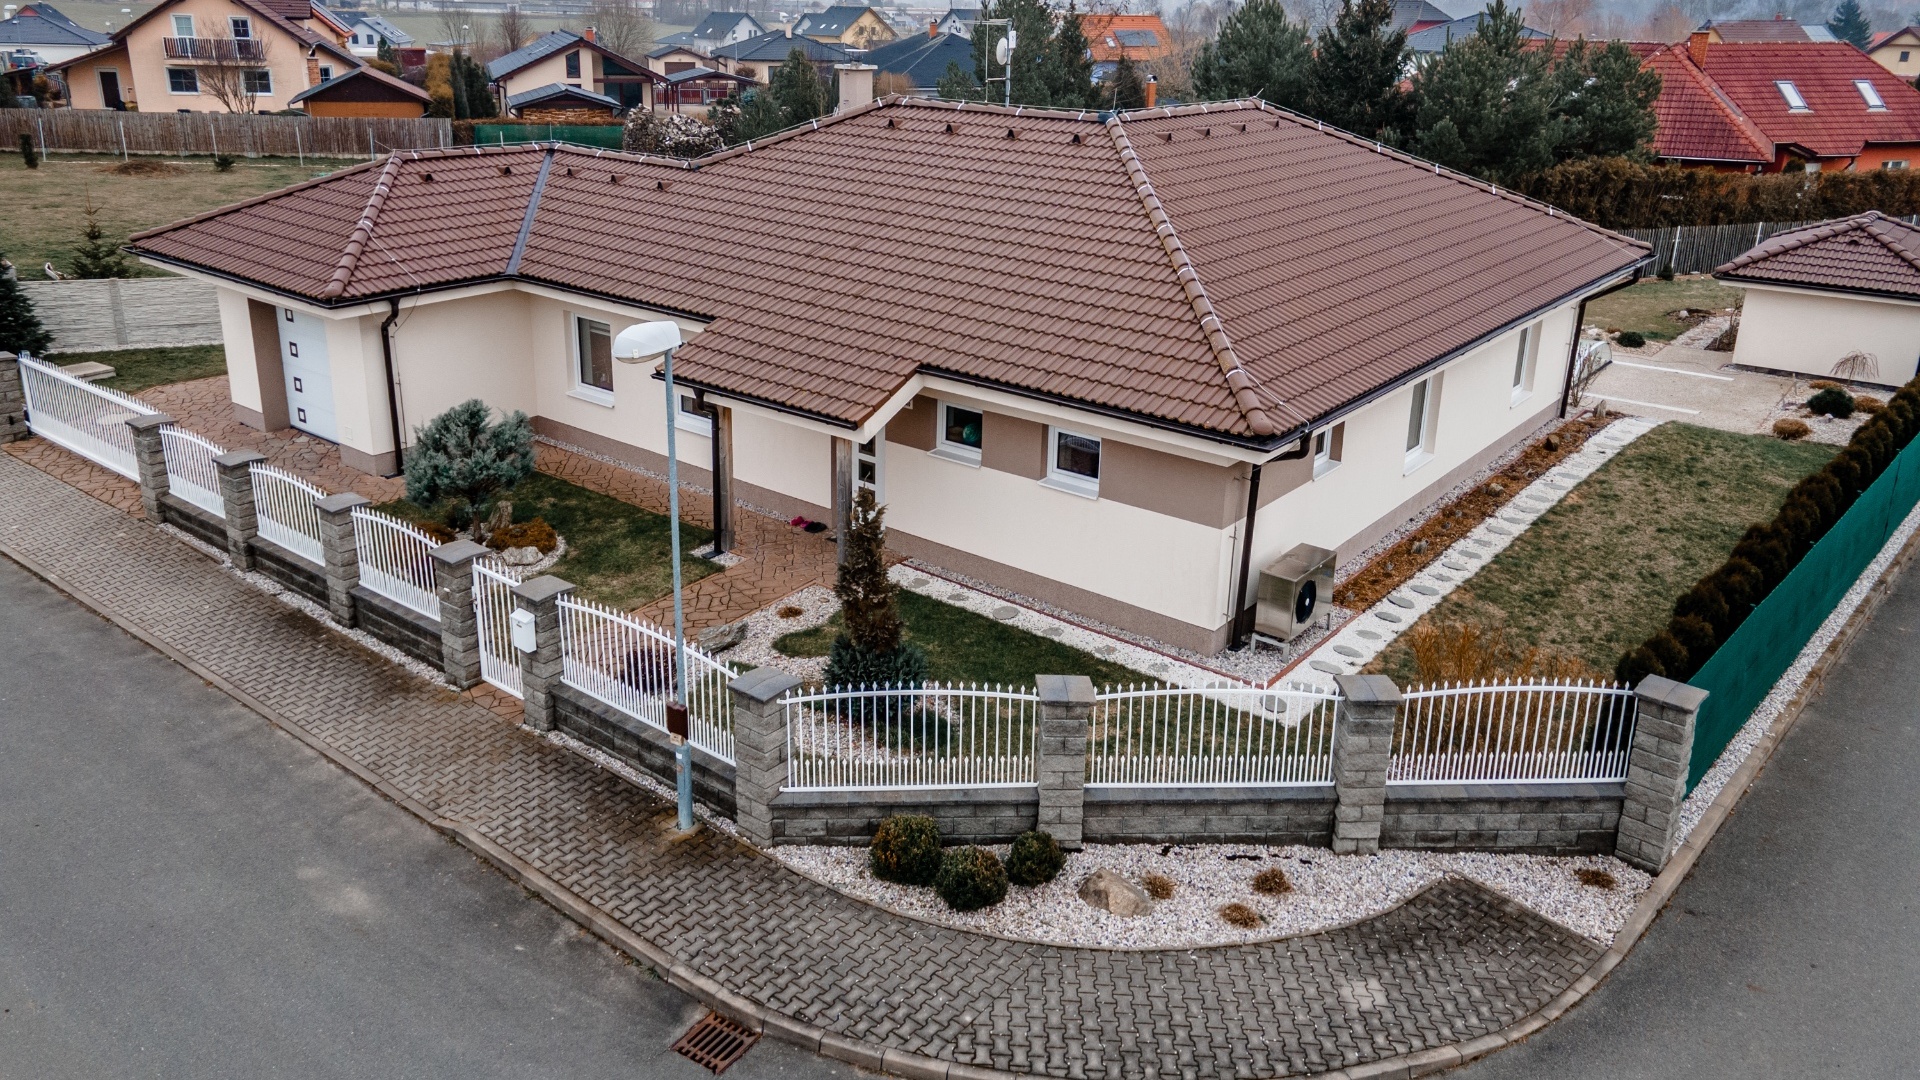 Rodinný dům v Žídněvsi se 178 m² užitné plochy v energetické třídě C! A NOVĚ S FOTOVOLTAICKOU ELEKTRÁRNOU!